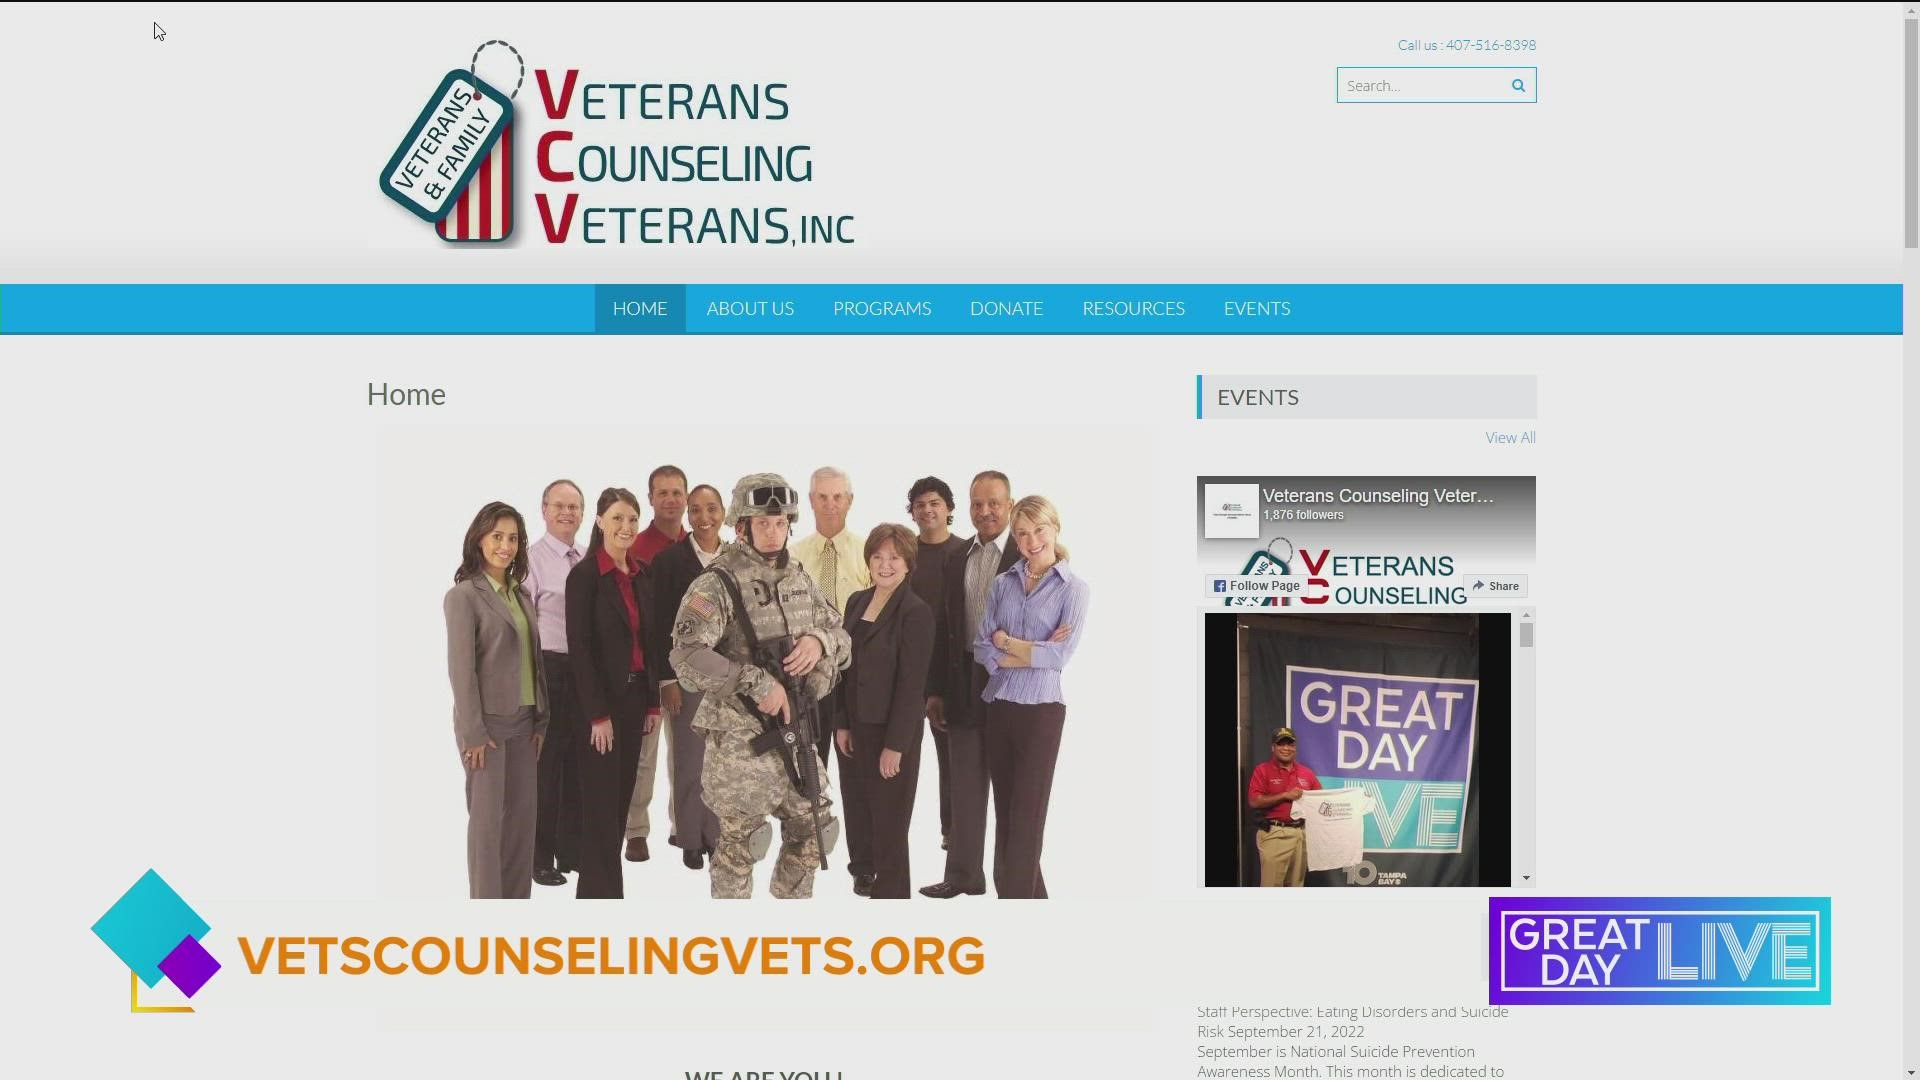 Veterans Counseling Veterans